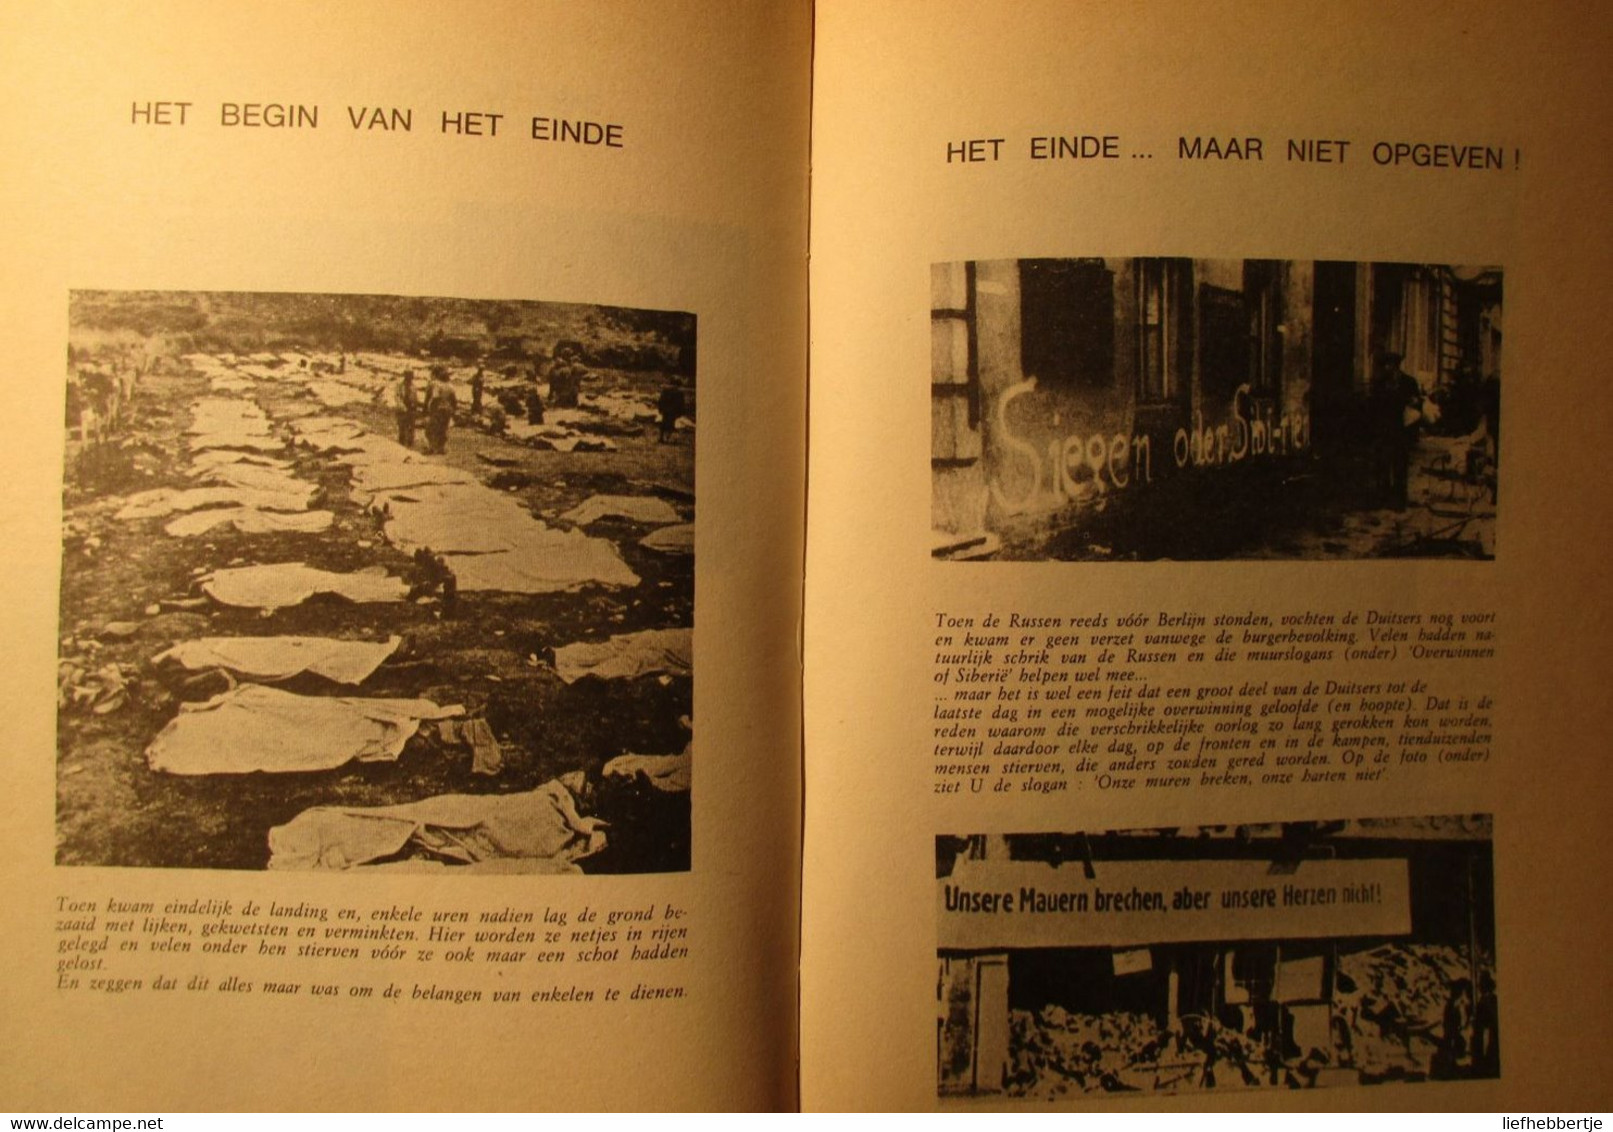 50 Jaar Menselijke Schande - Door F. Van Maele - Uitg. Te Gent Bij De Steenbok - Guerra 1939-45